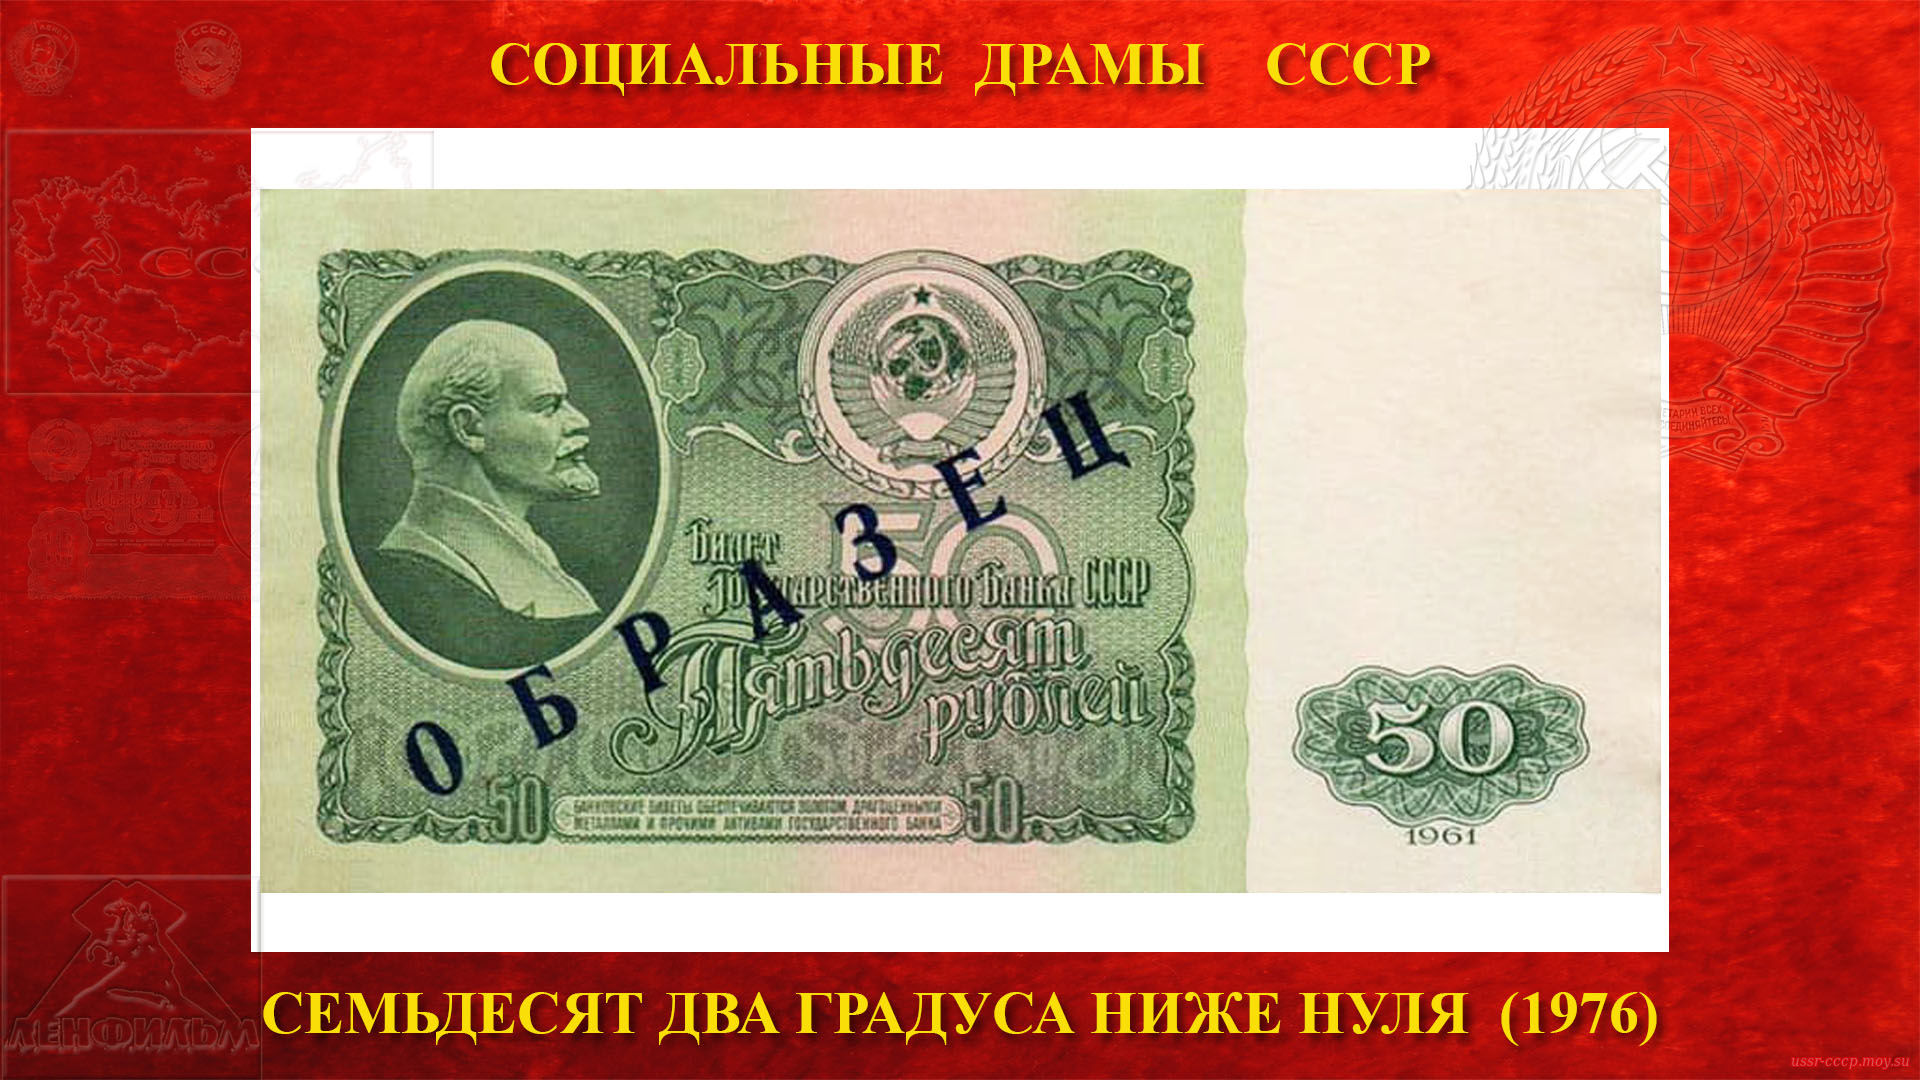 50 рублей 1961 года — Перед вводом новых купюр в денежное обращение, в финансовые учреждения страны, для ознакомления с новыми денежными знаками, рассылались образцы.